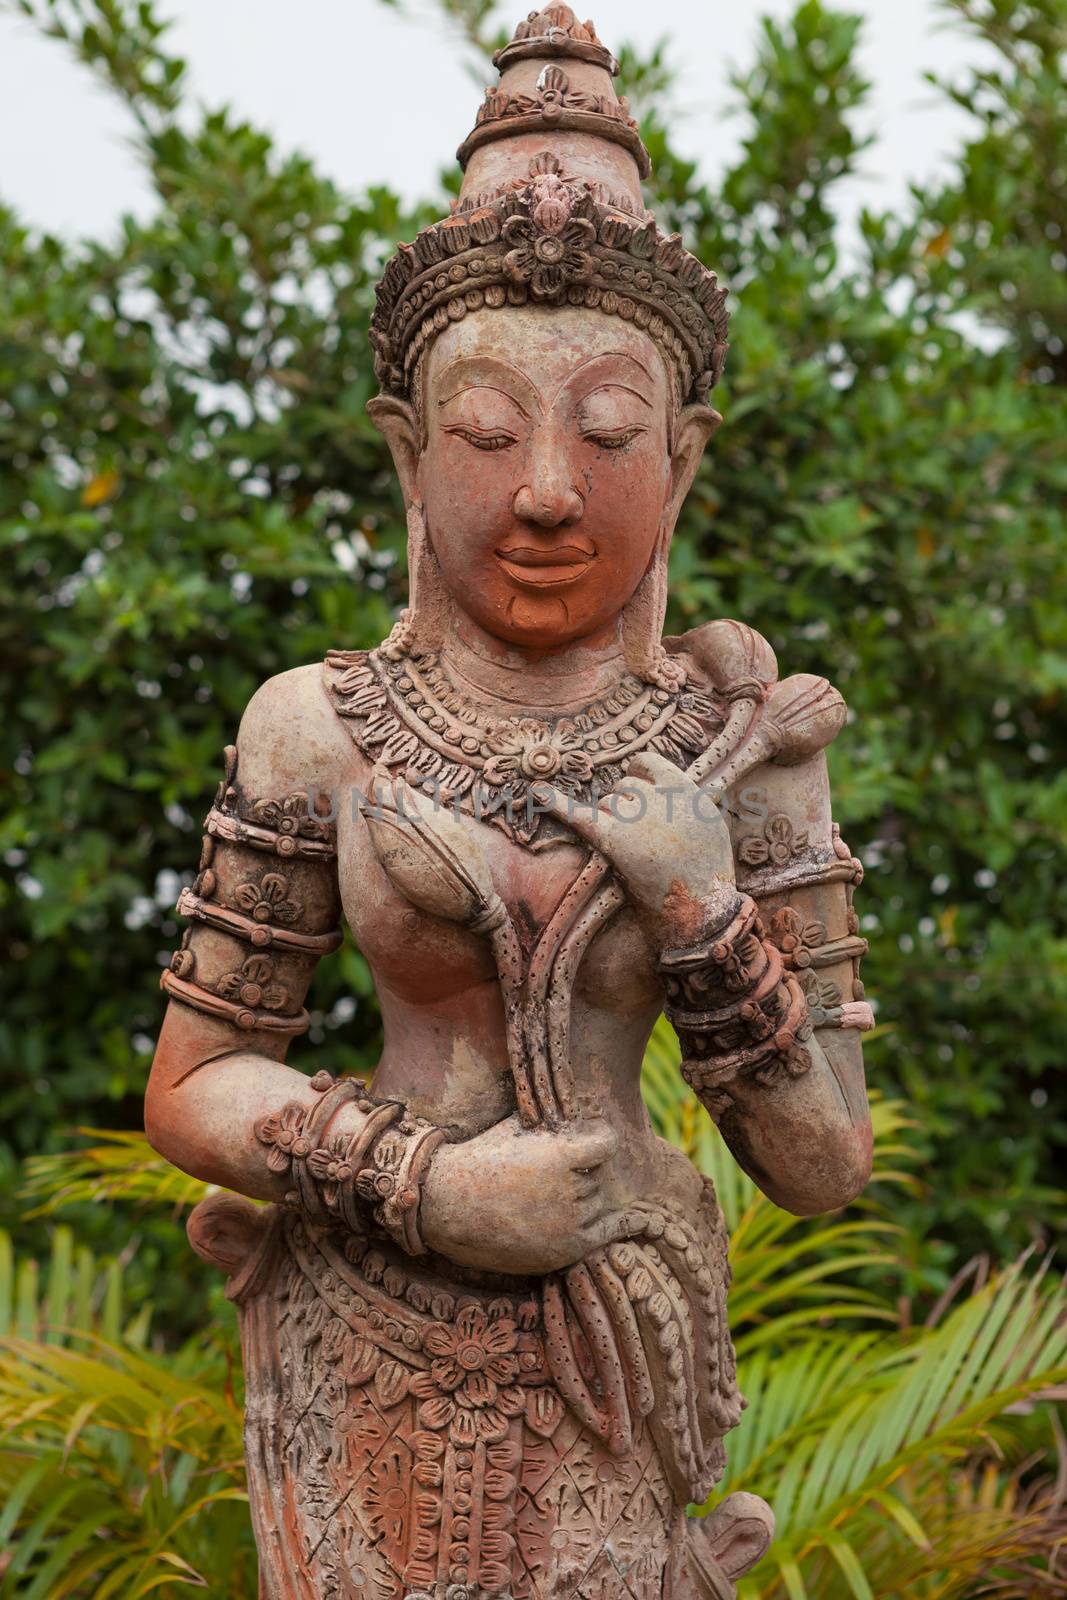 Thai style angel statue in Thailand